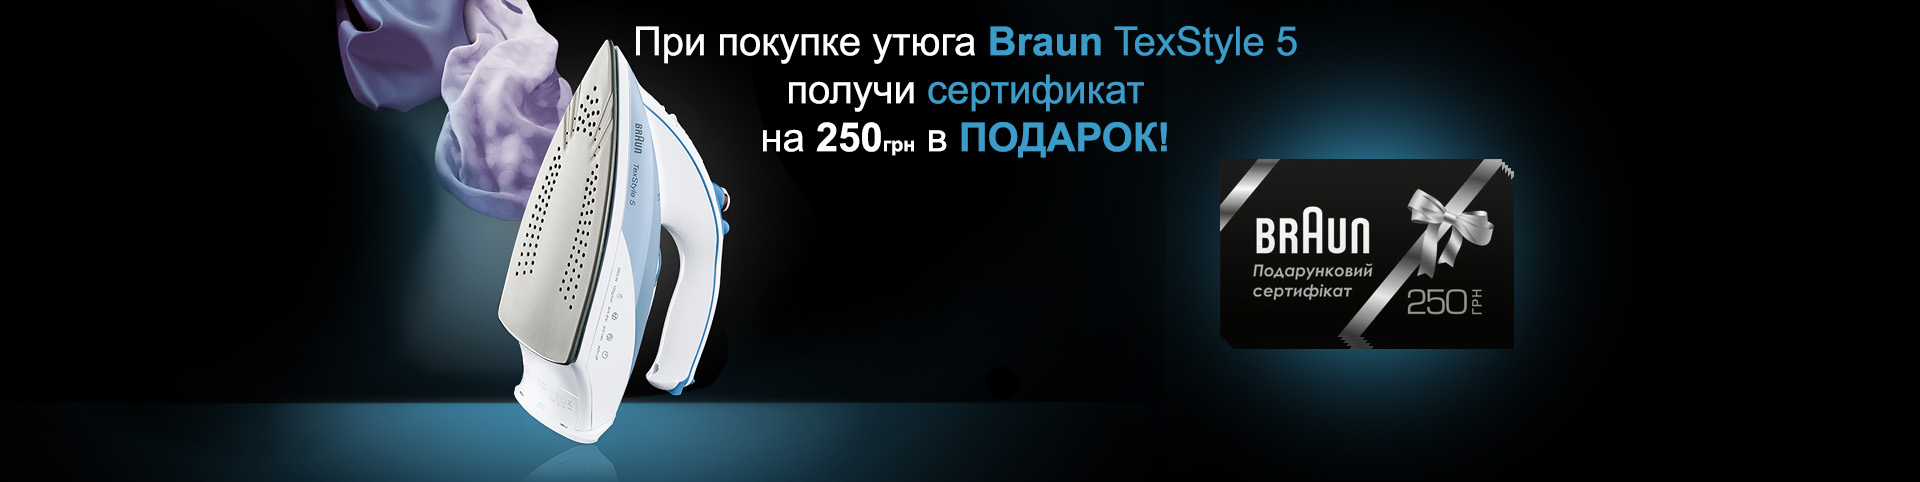 При покупке утюга TexStyle 5 - в подарок сертификат Braun на 250 грн!